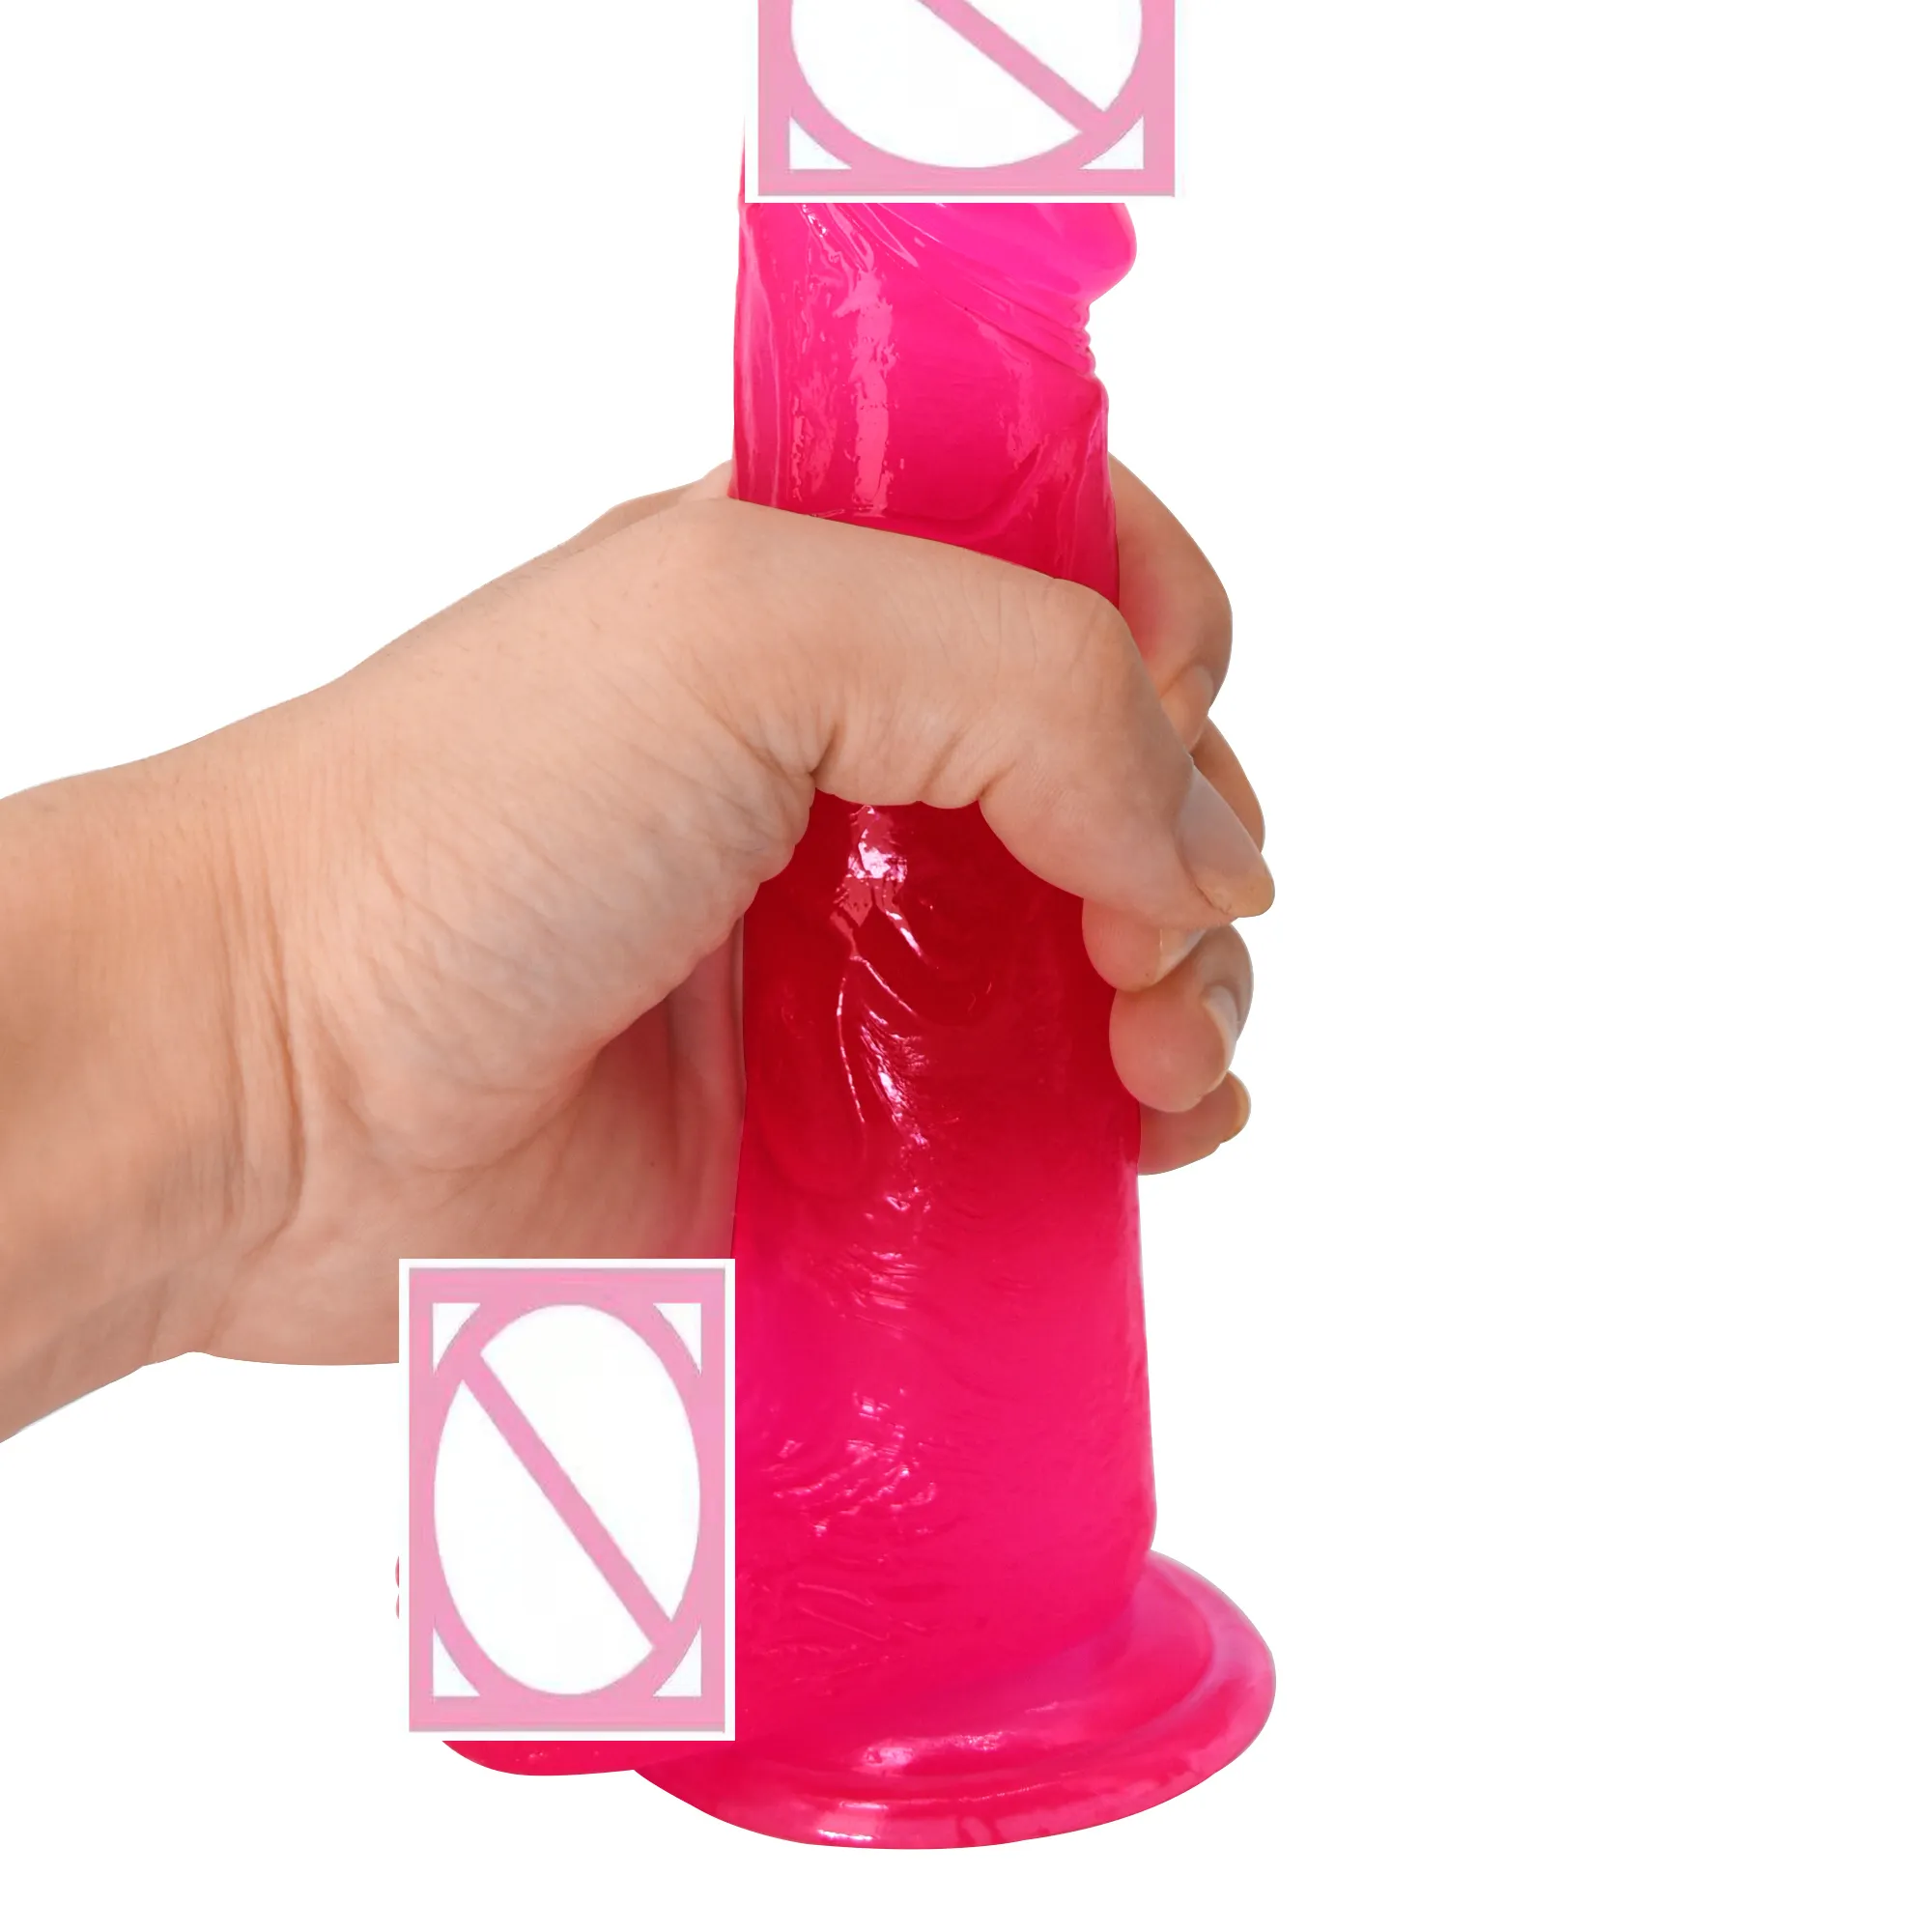 Xxx hot oem xxxxxxxx video für vagina sex maschine sex produkte realistische klare kristall bunte dildo sextoy juguetes sexuelle